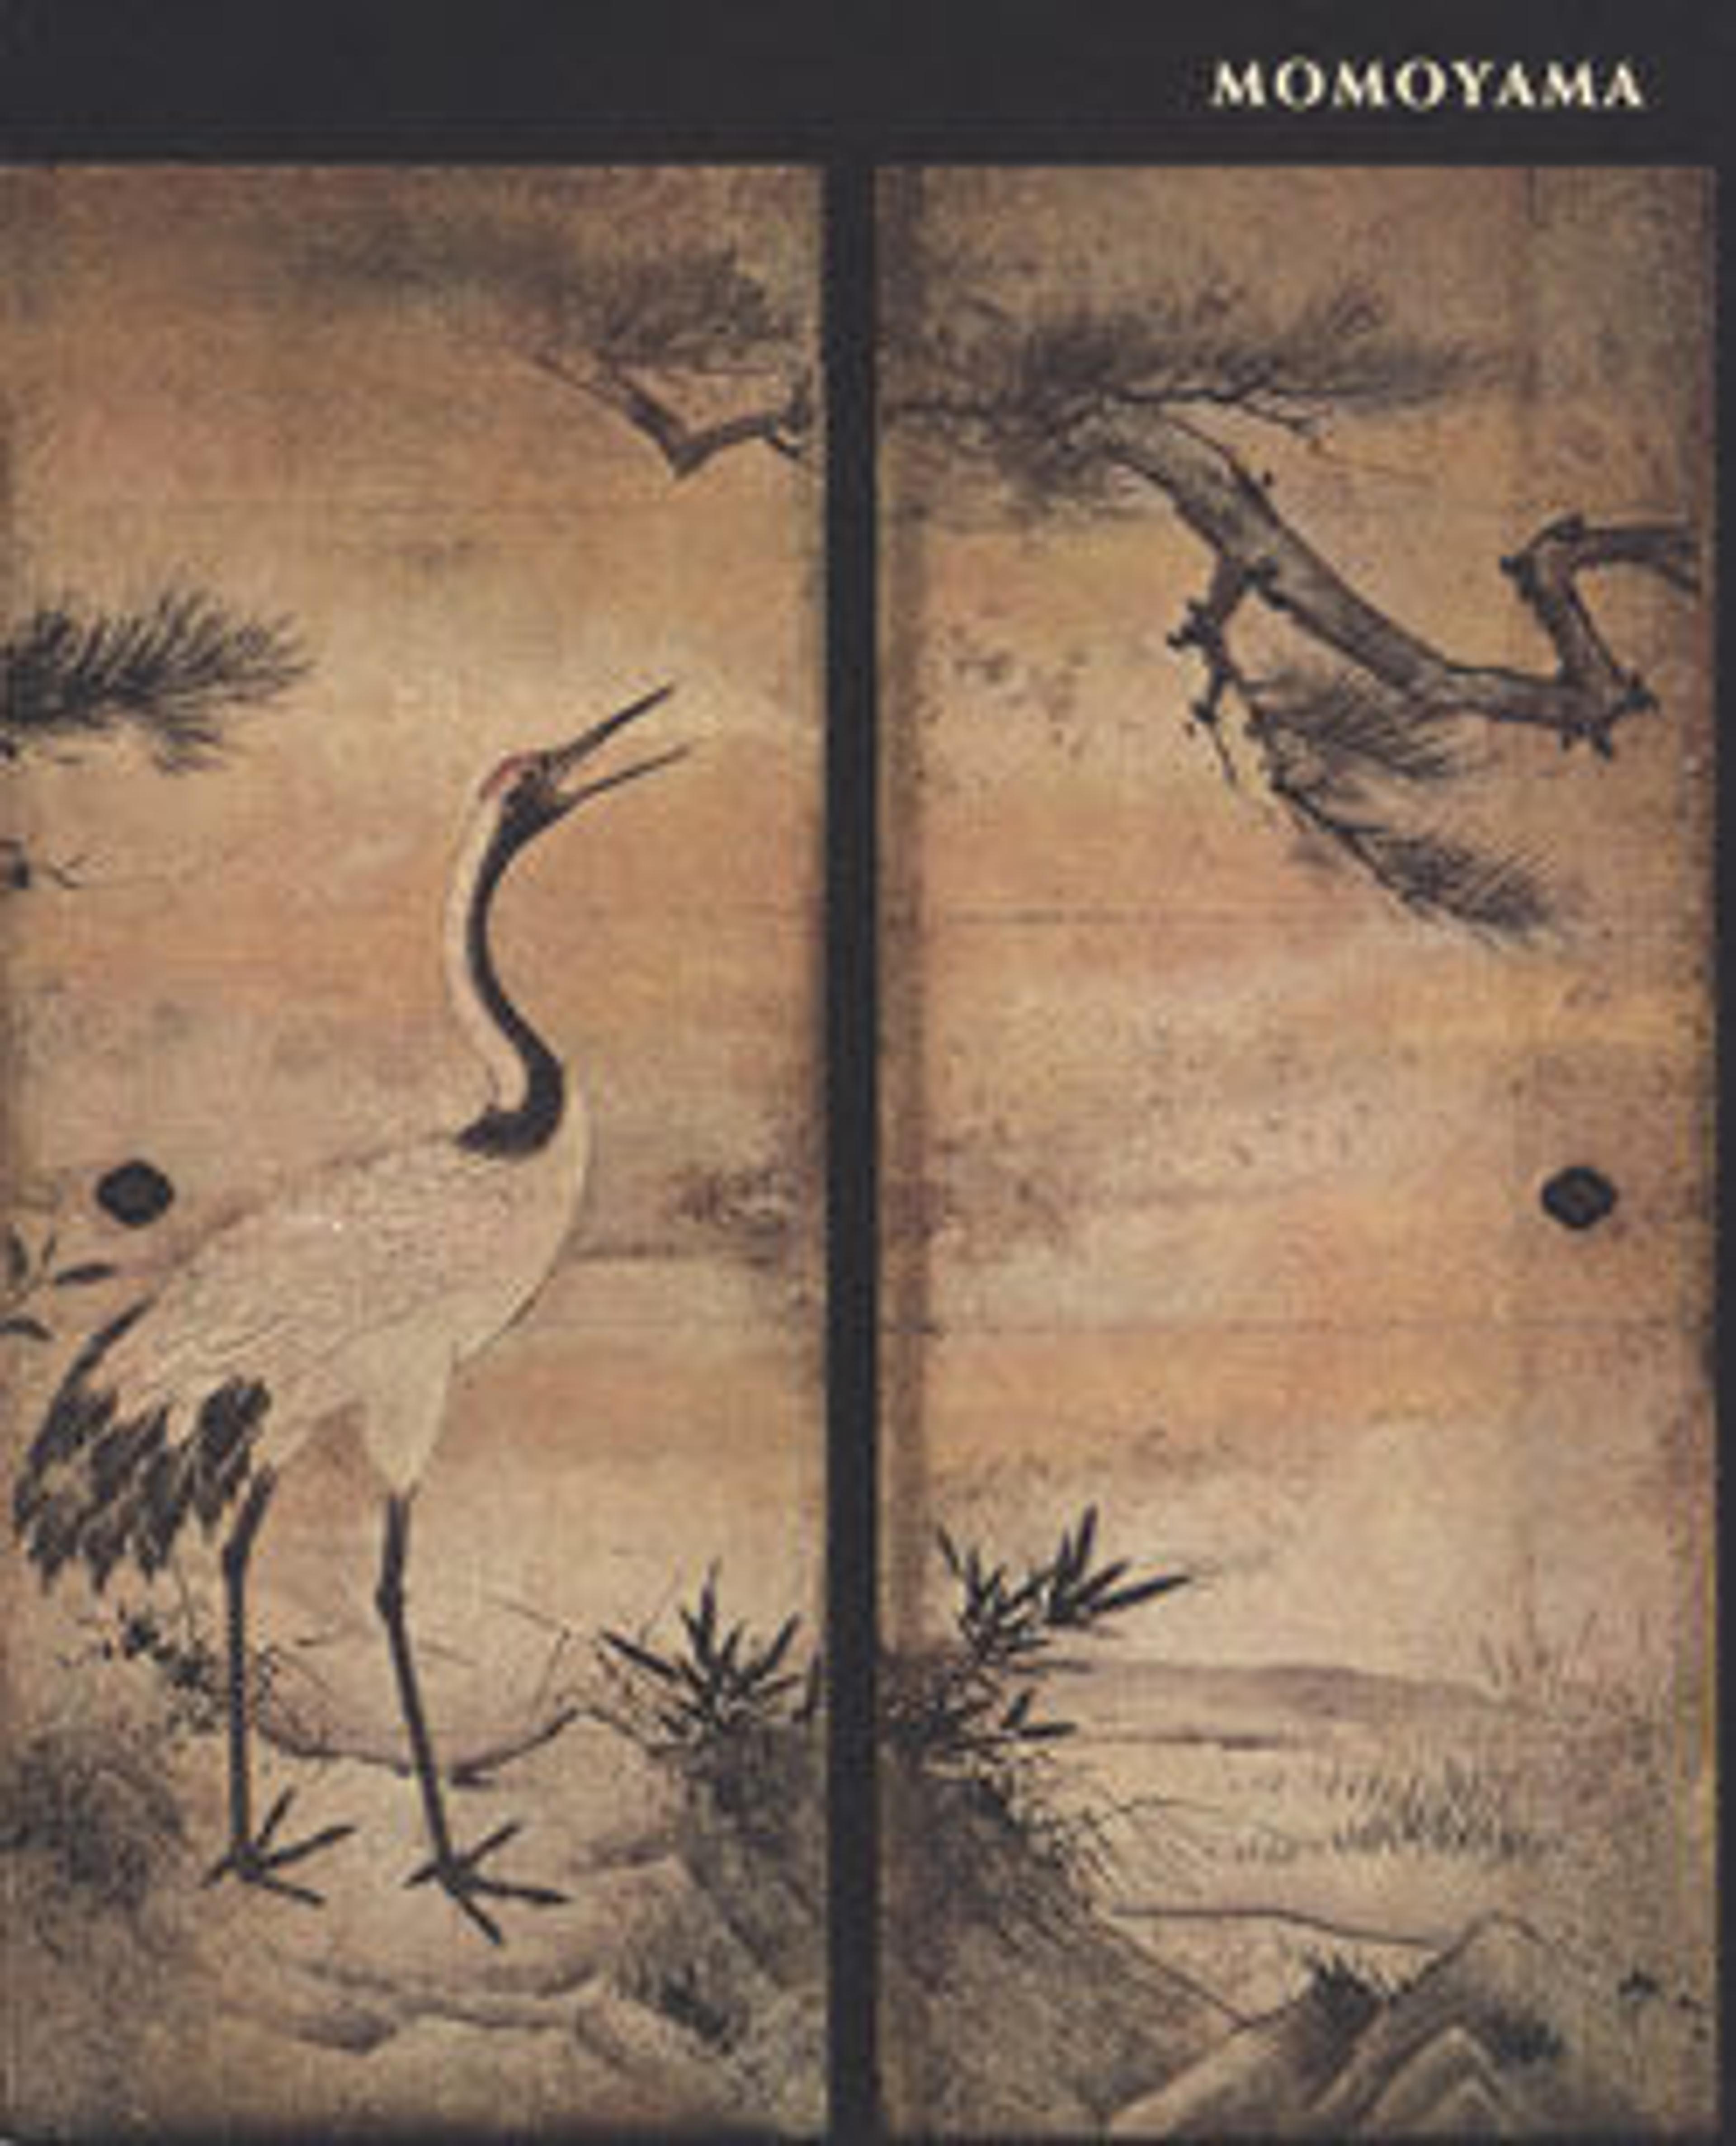 Momoyama: Japanese Art in the Age of Grandeur